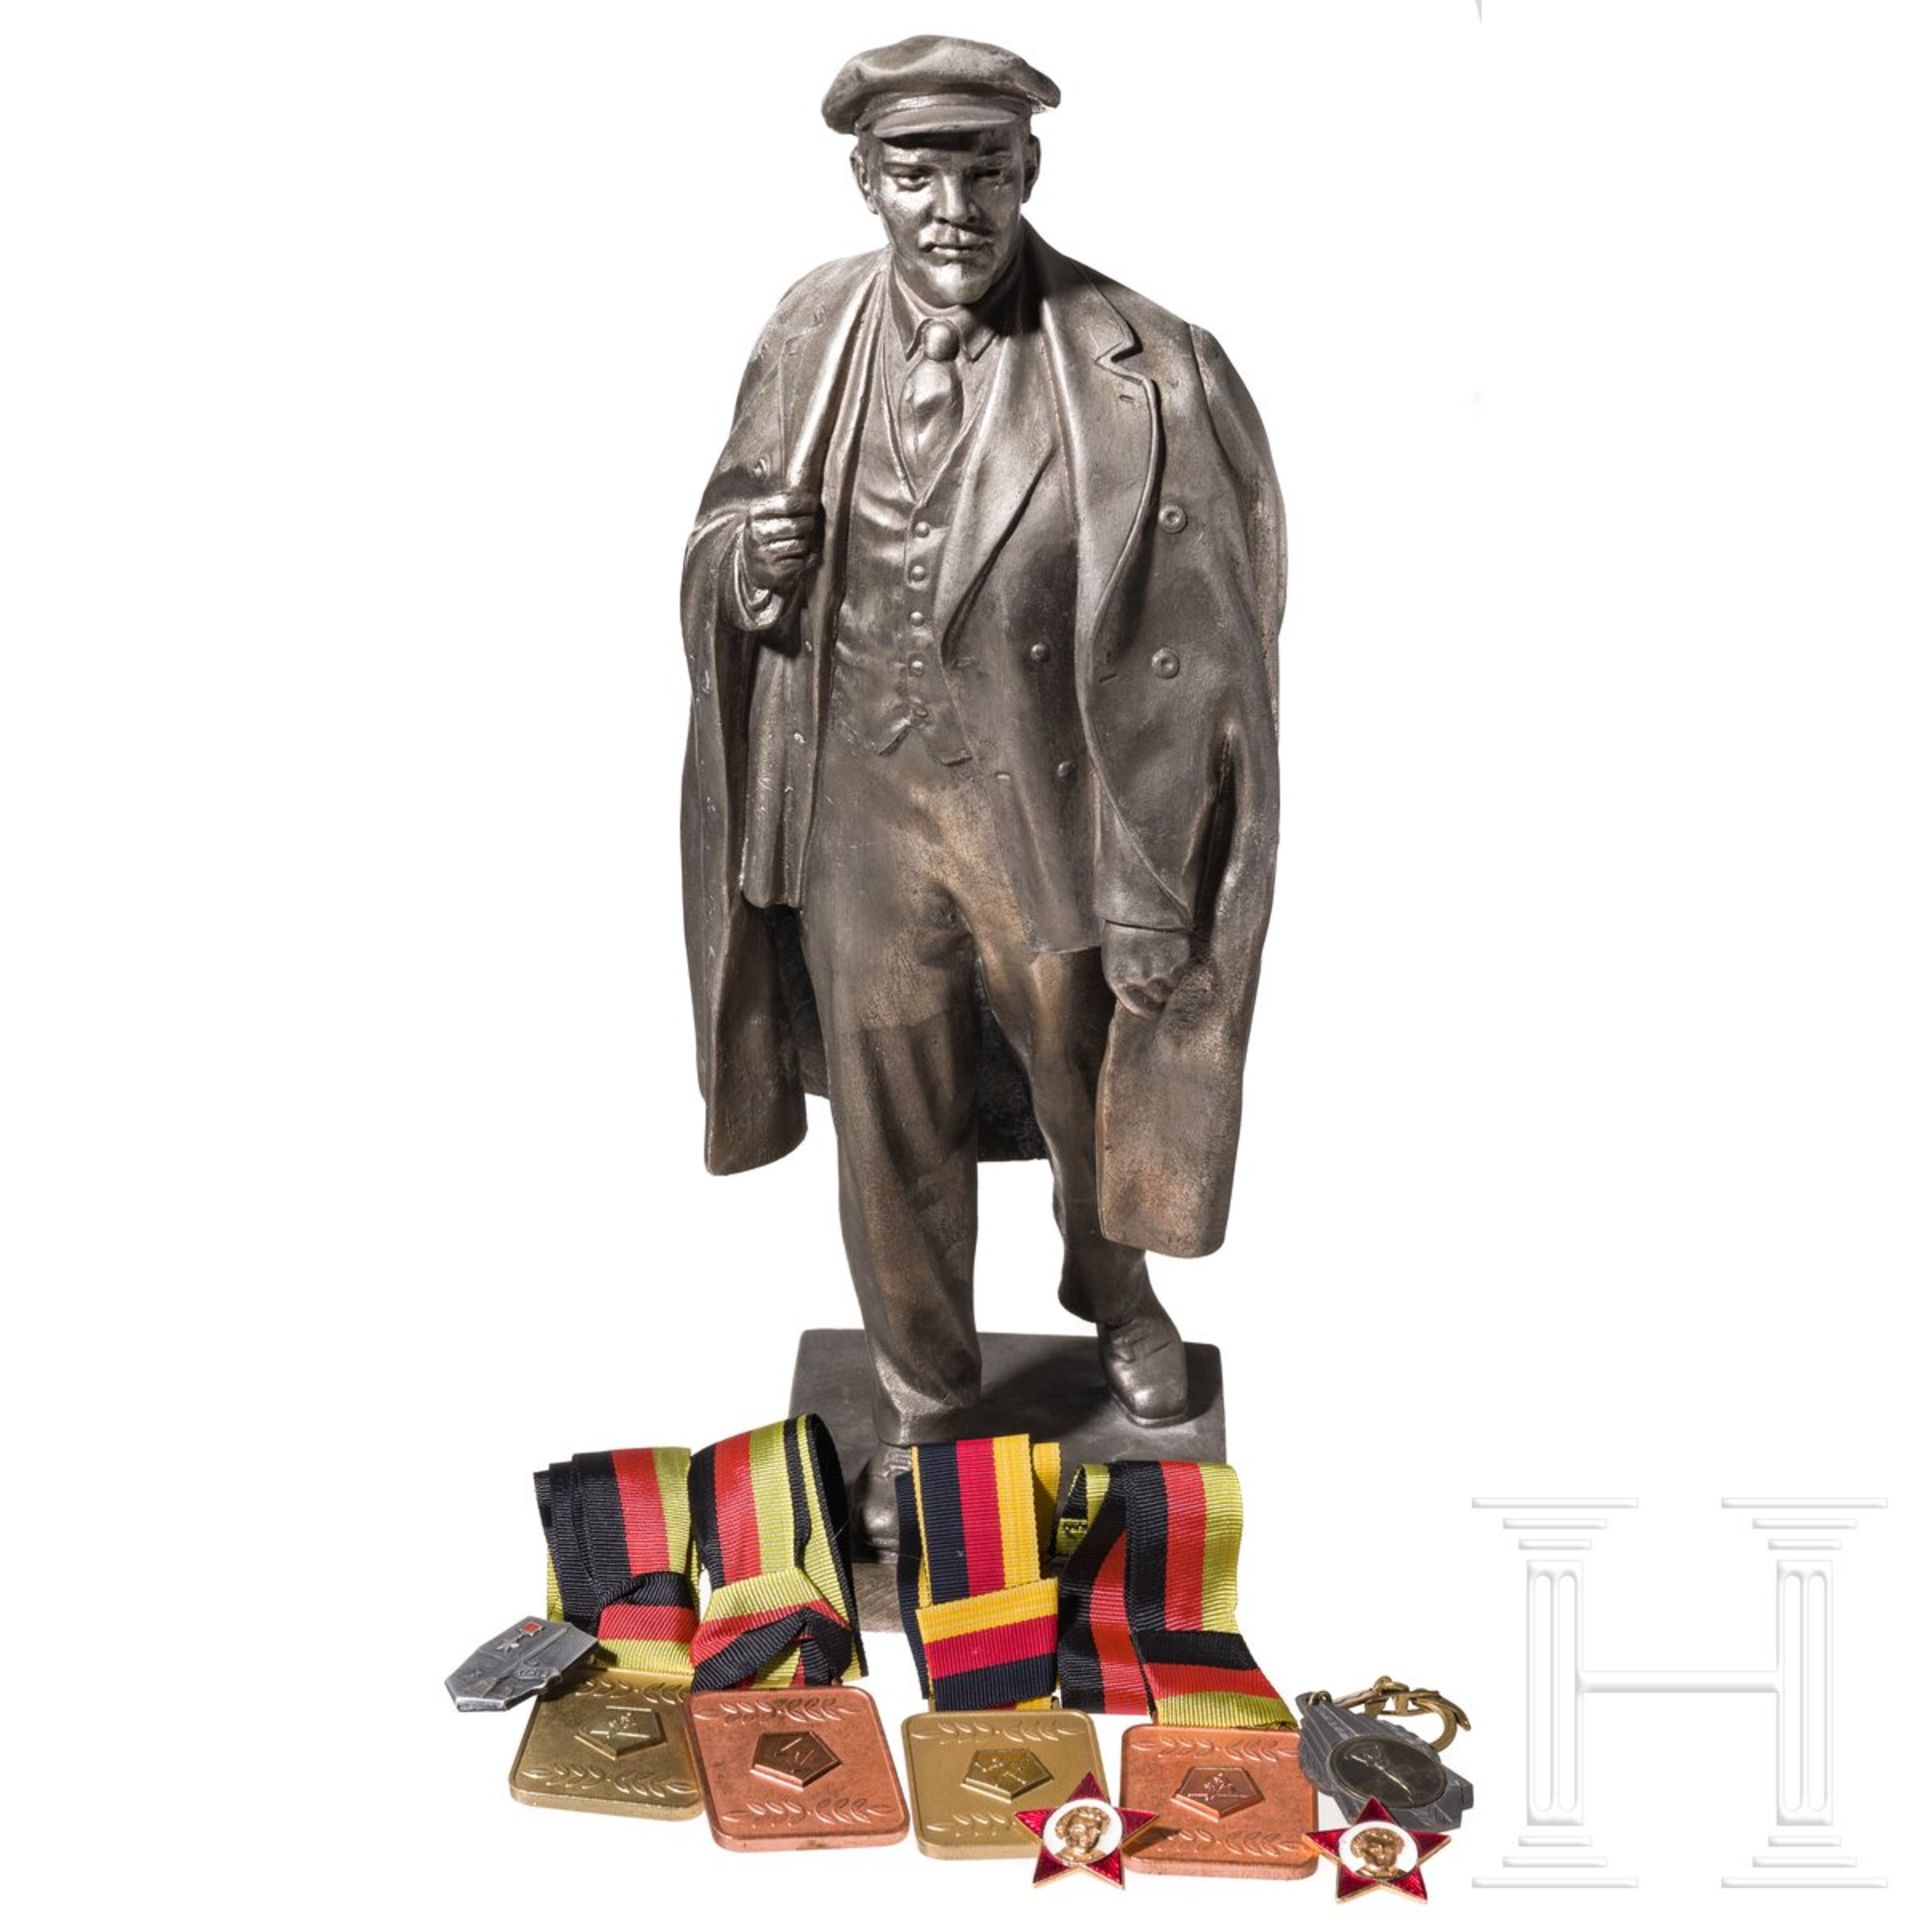 Lenin-Statuette und acht Auszeichnungen, Sowjetunion/DDR